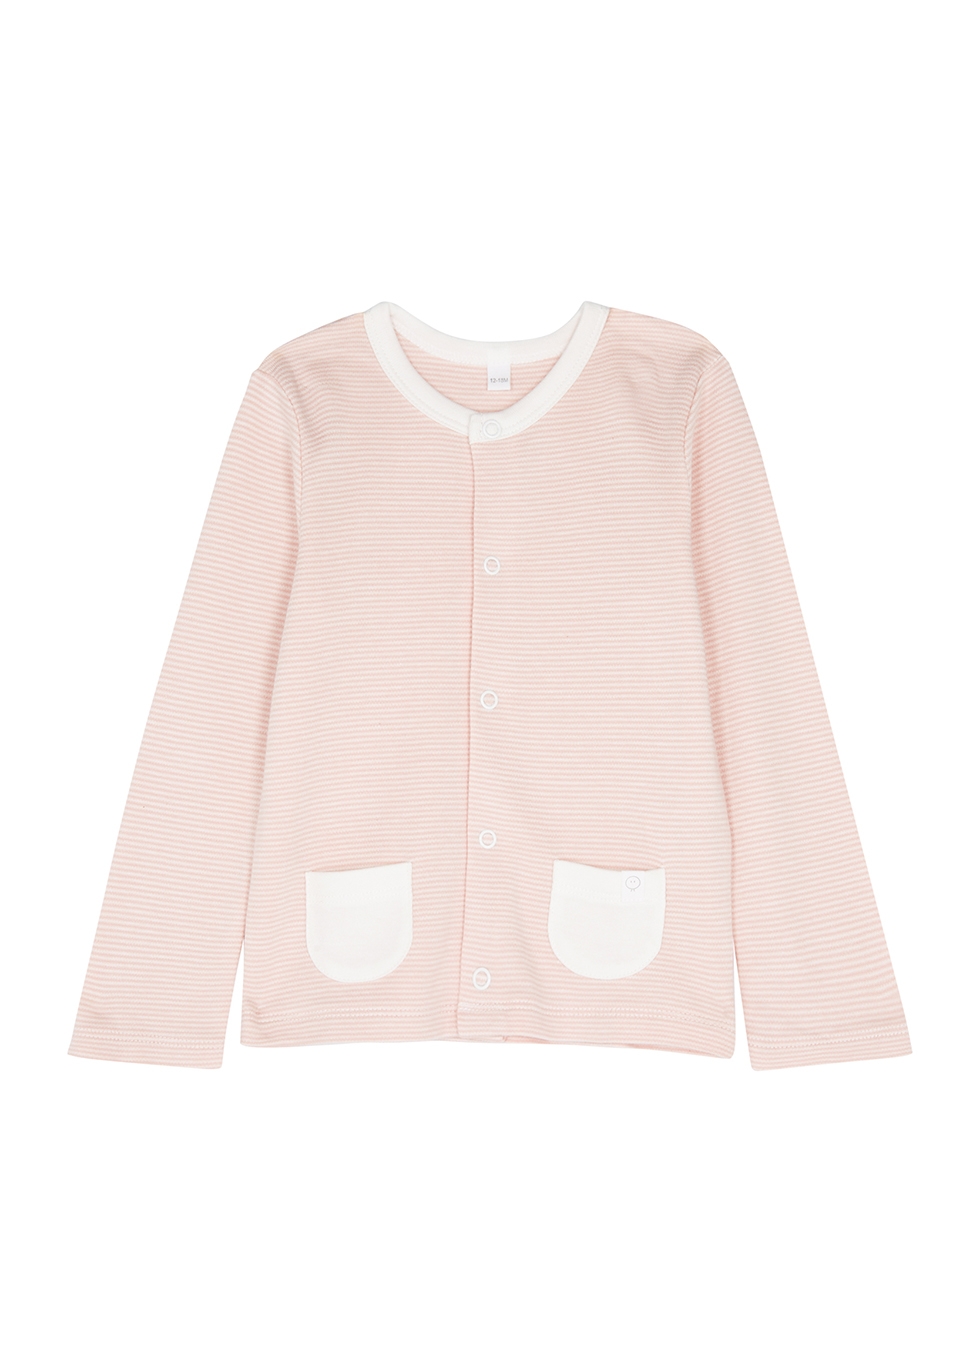 Mori Babies' Pink Striped Jersey Cardigan